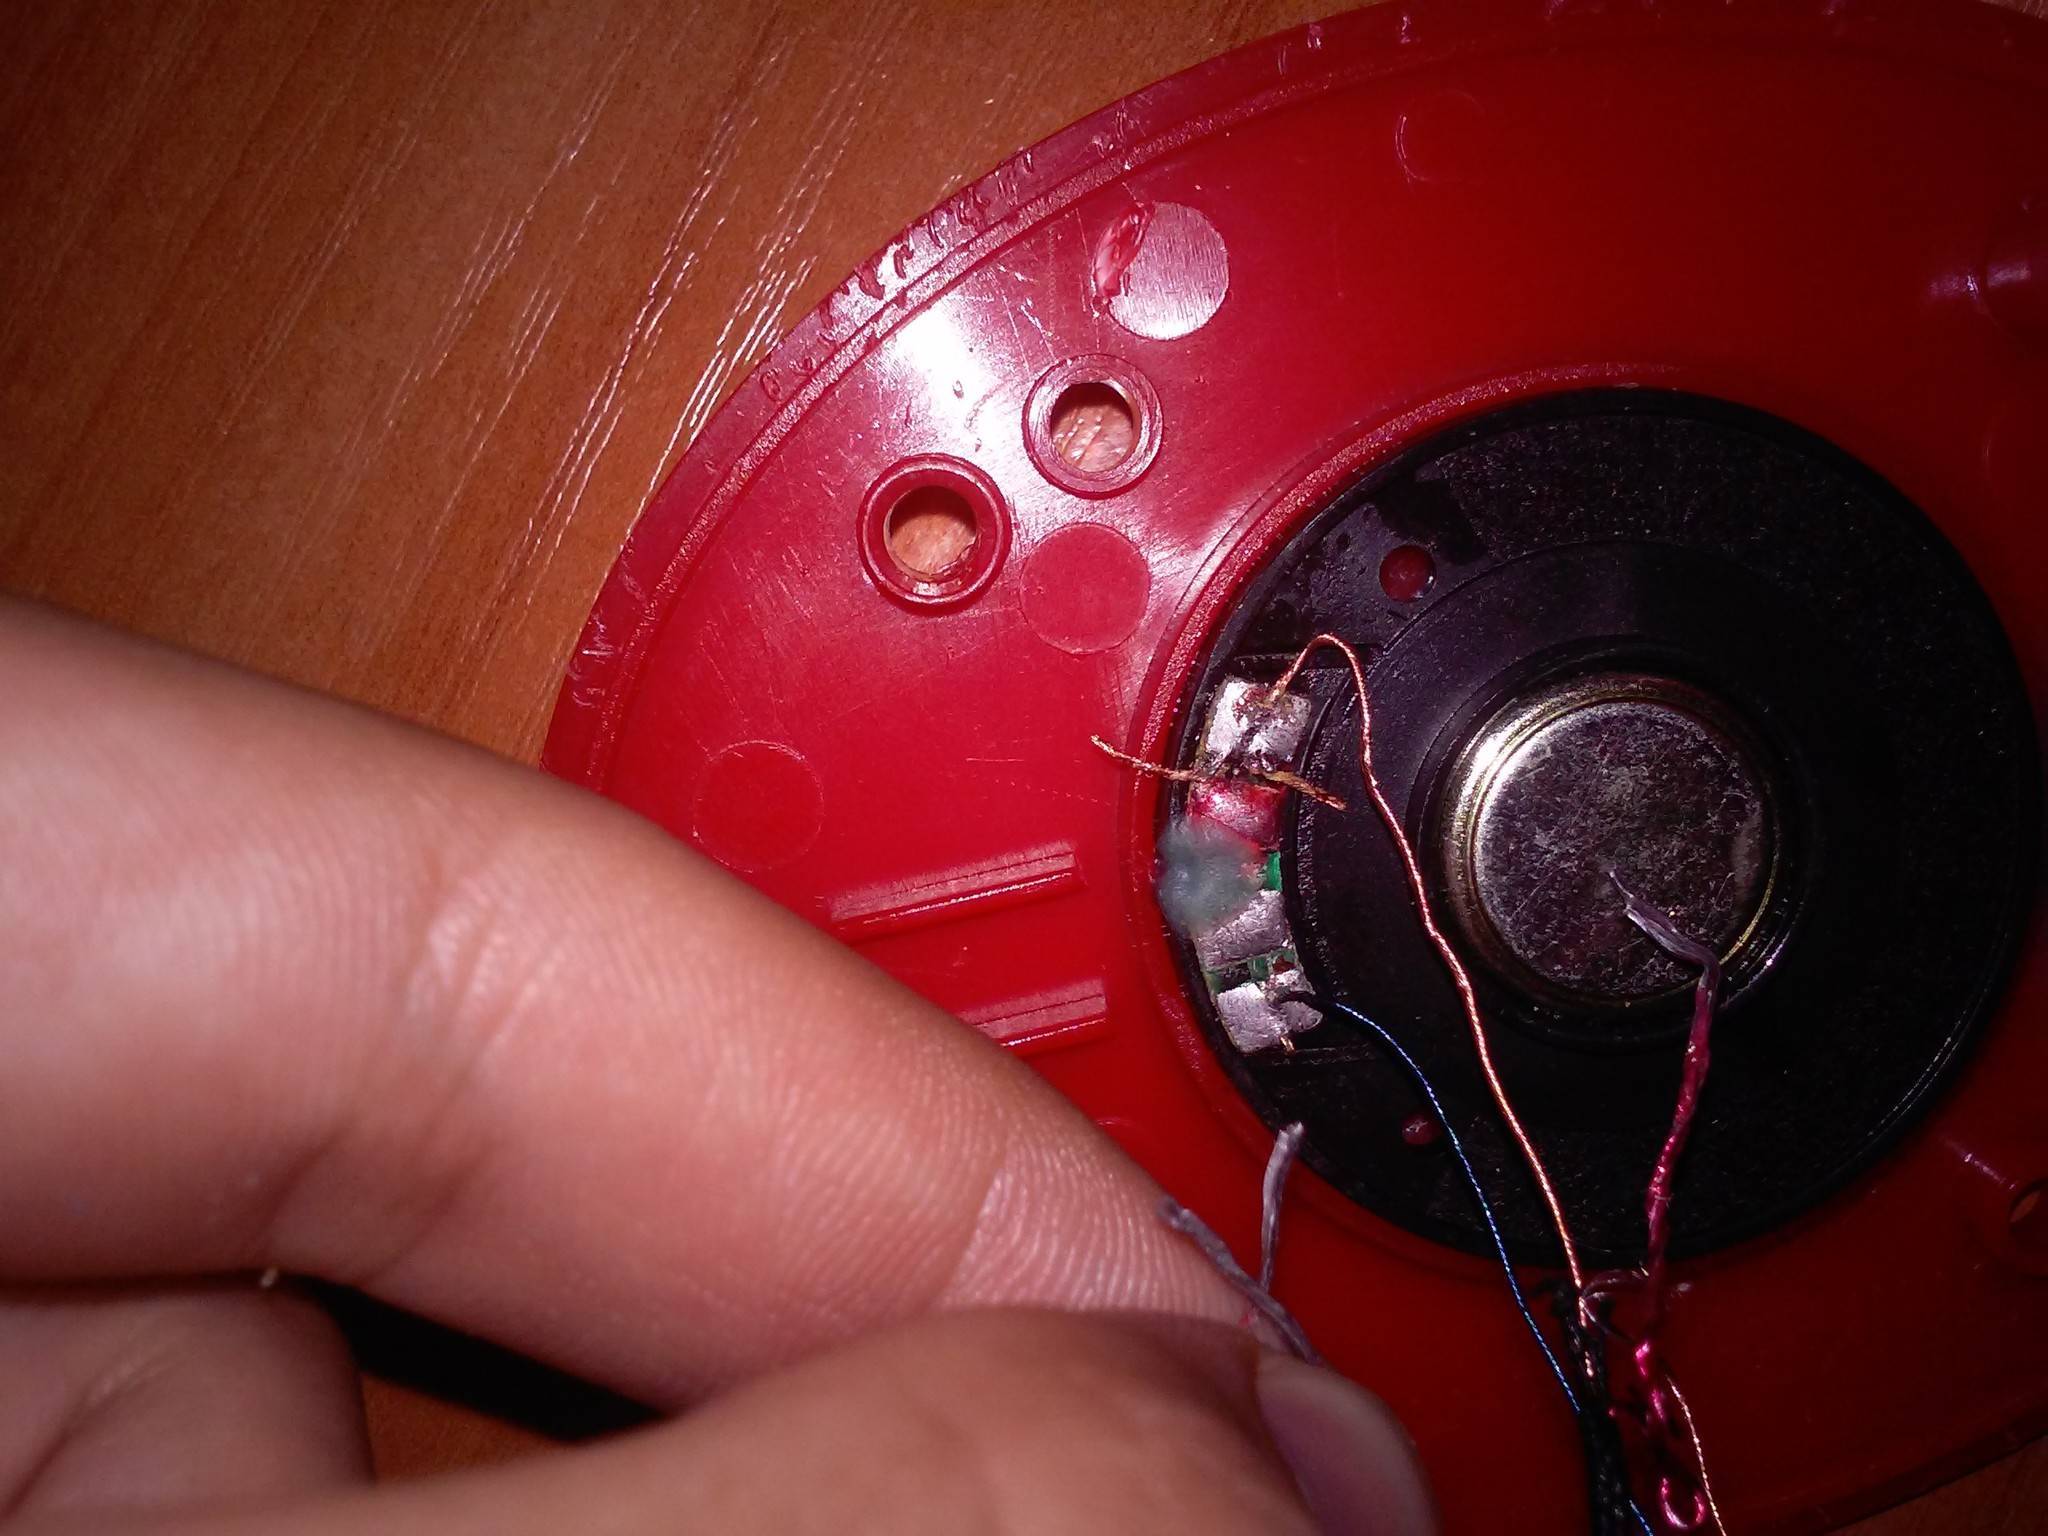 Как самому починить наушники если порвался провод: инструкция по ремонту с фотографиями